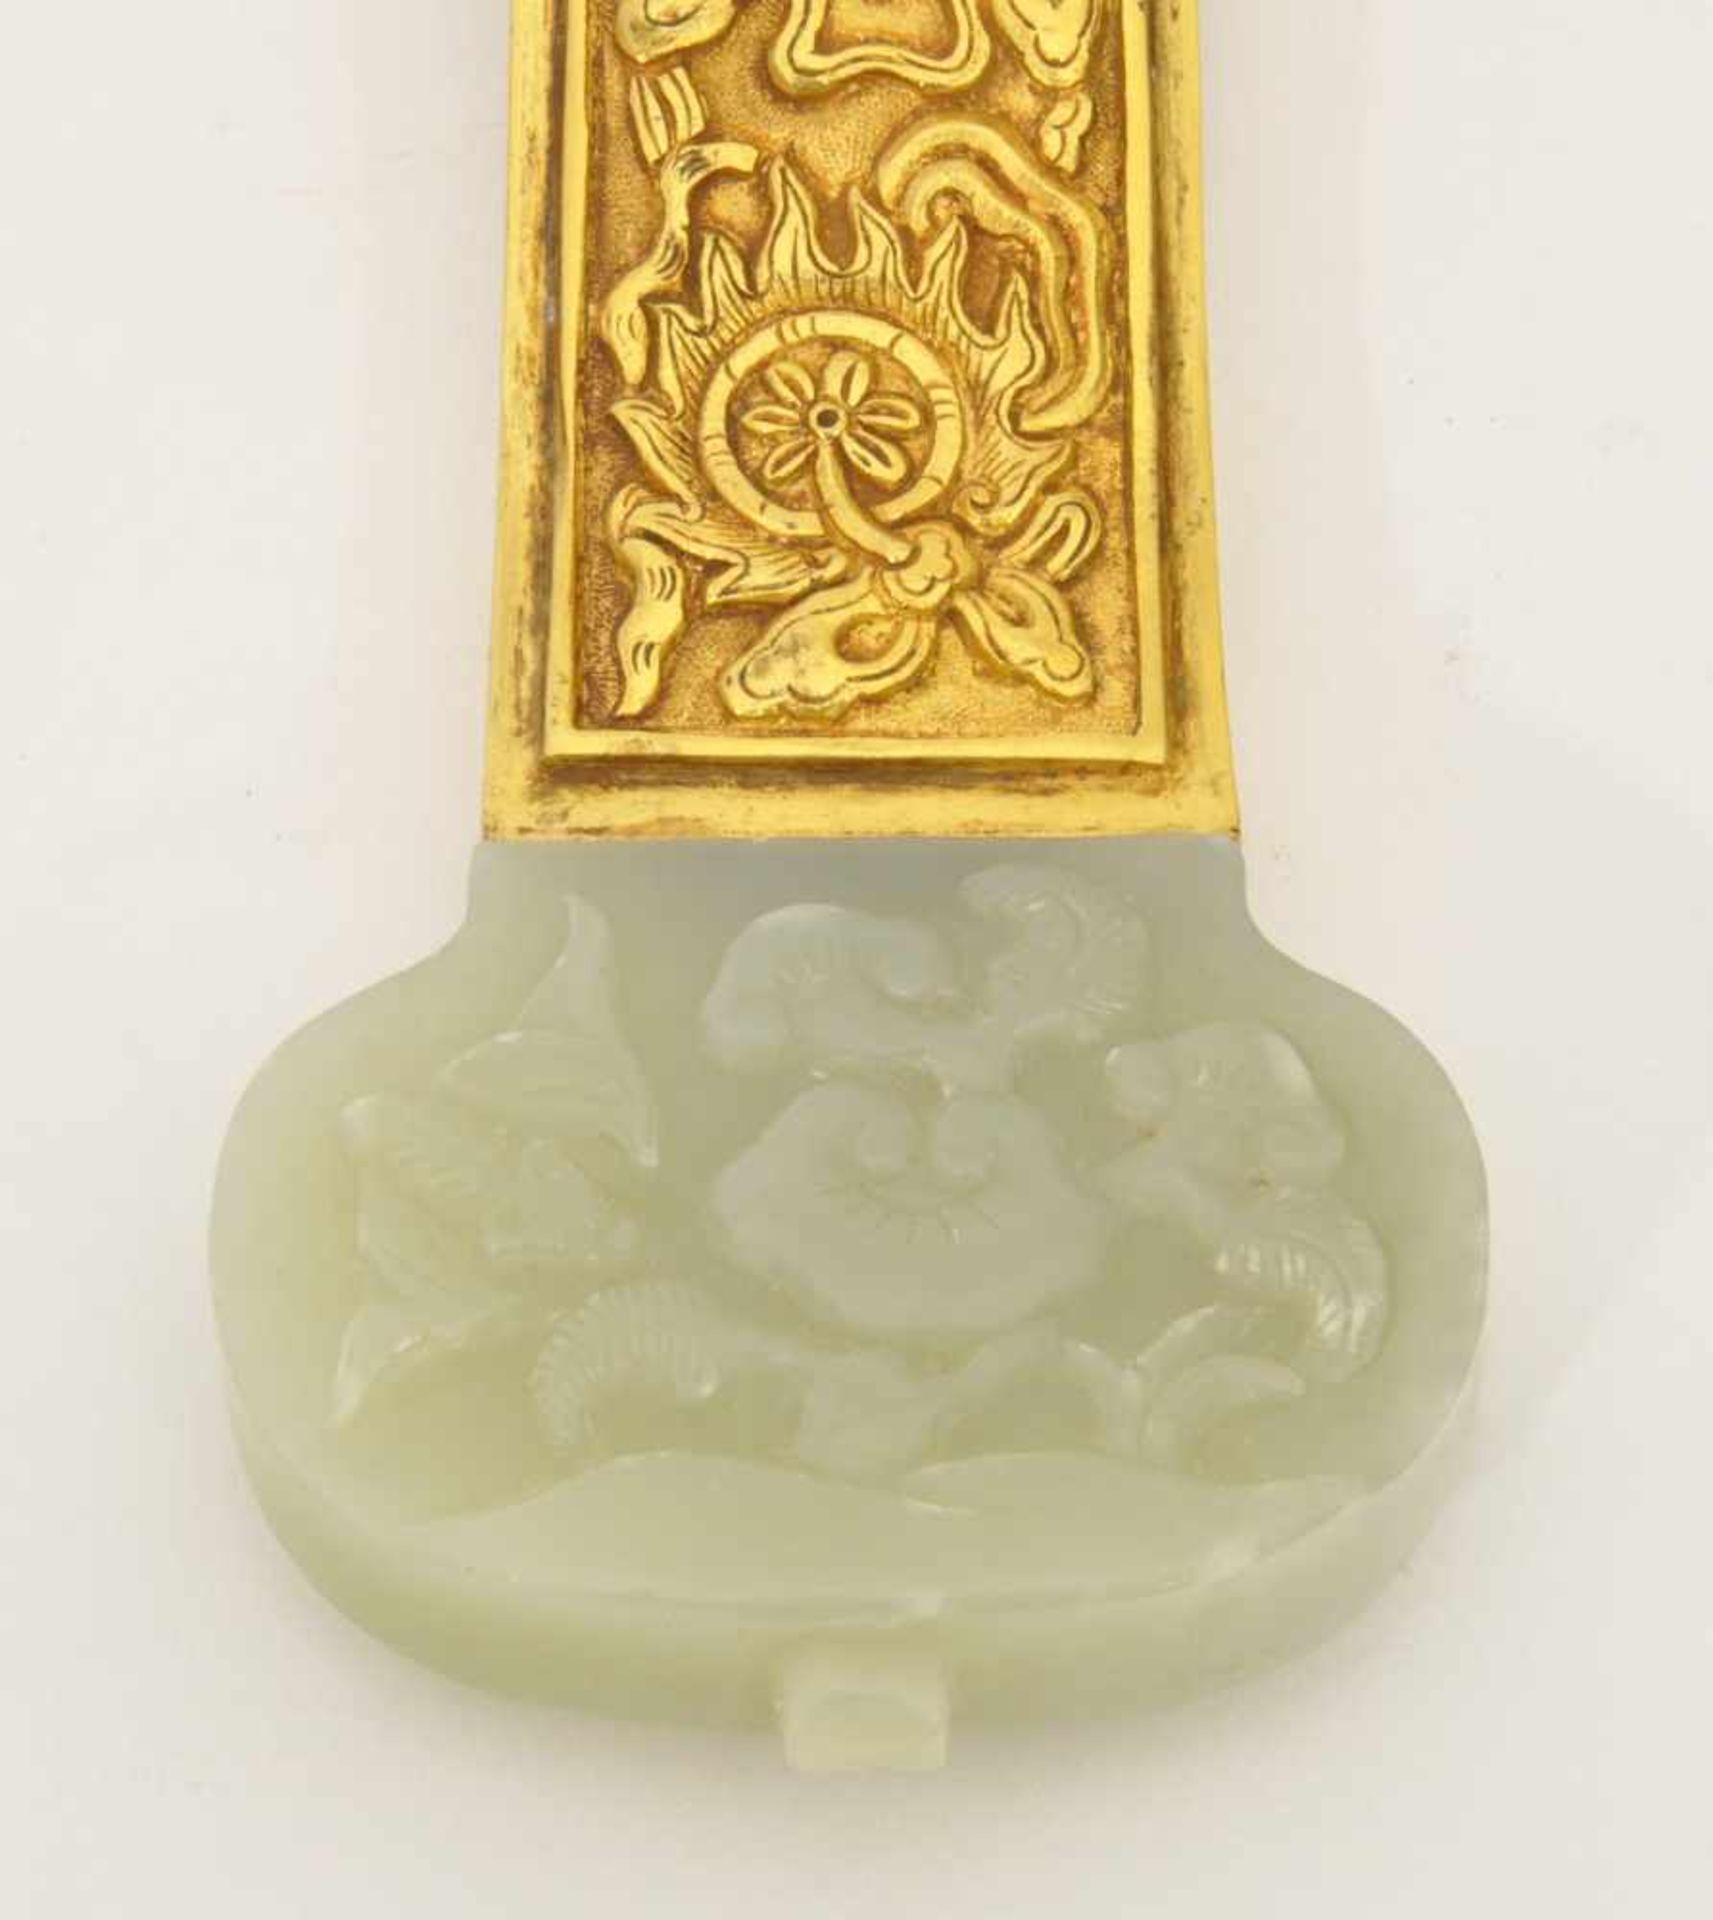 Ruyi - Zepter China, ganzflächig ziseliert, vergoldet, wolkenförmiges Oberteil mit Einlage aus Jade, - Bild 3 aus 5